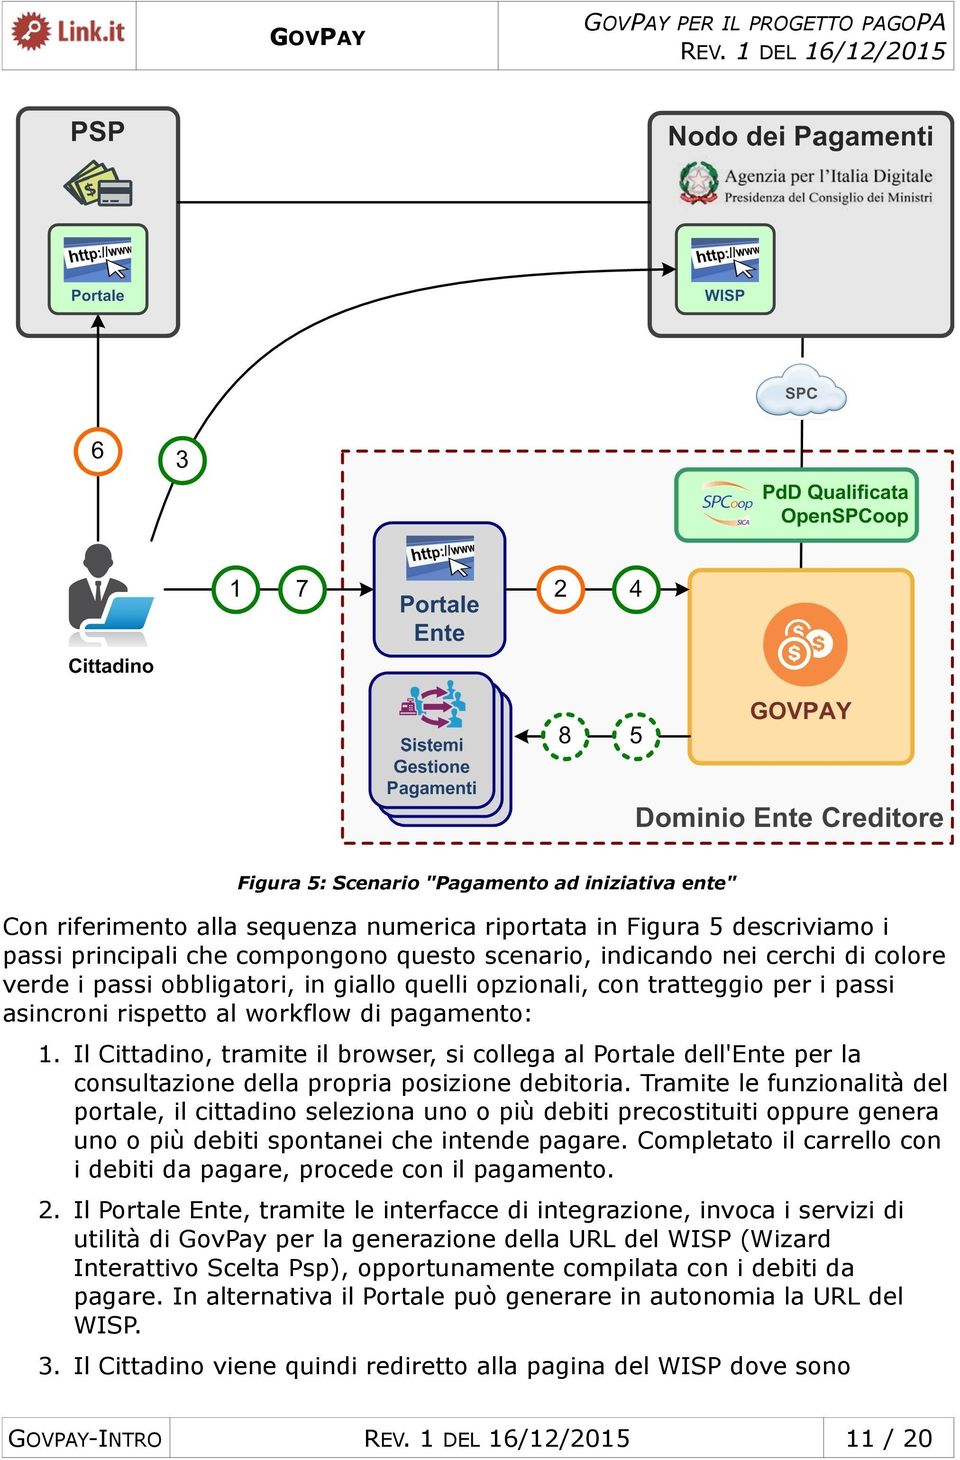 Il Cittadino, tramite il browser, si collega al Portale dell'ente per la consultazione della propria posizione debitoria.